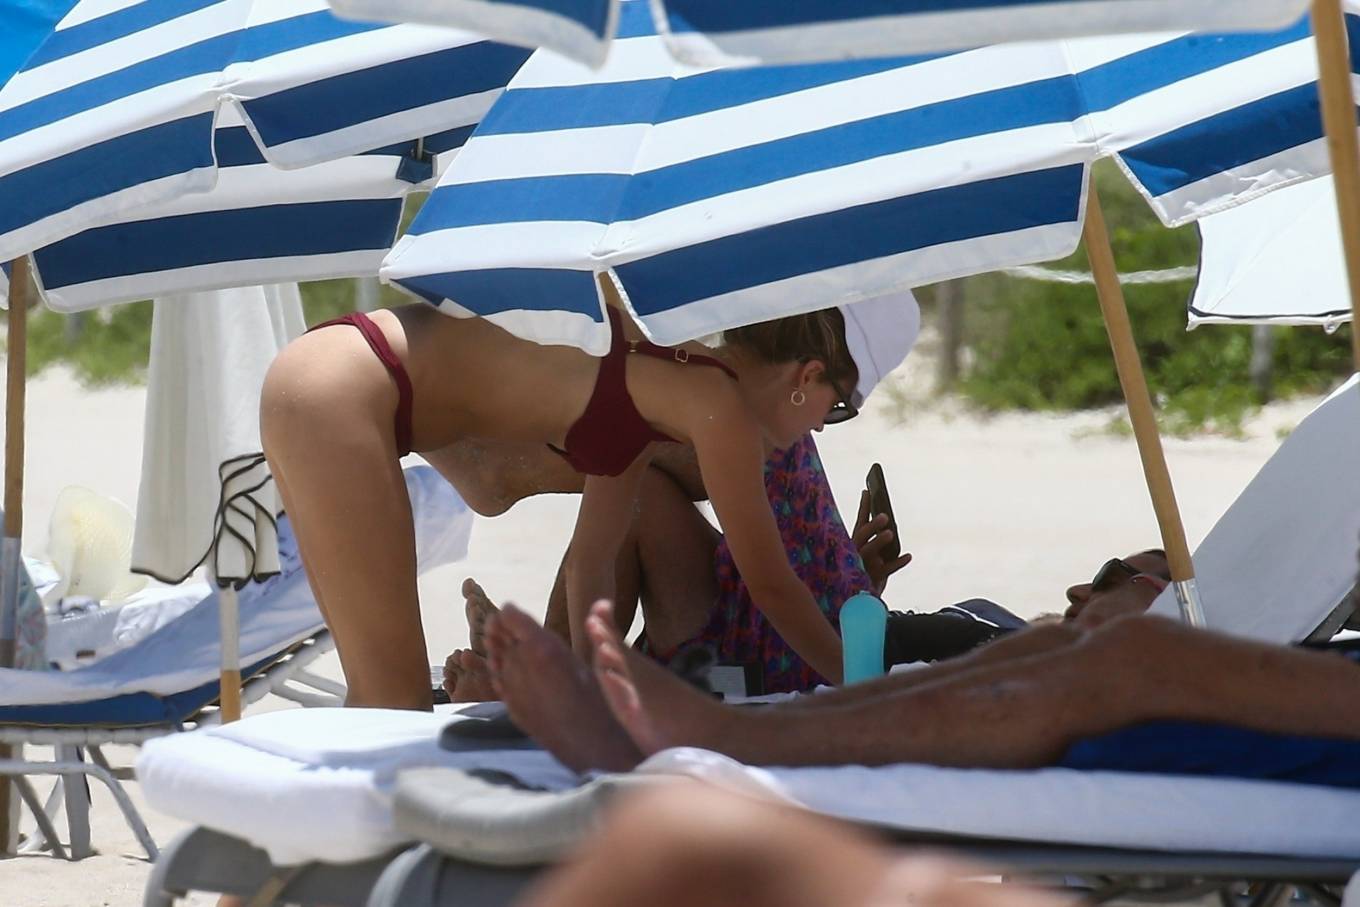 Roosmarijn de Kokin Bikini â€“ On the beach in Miami